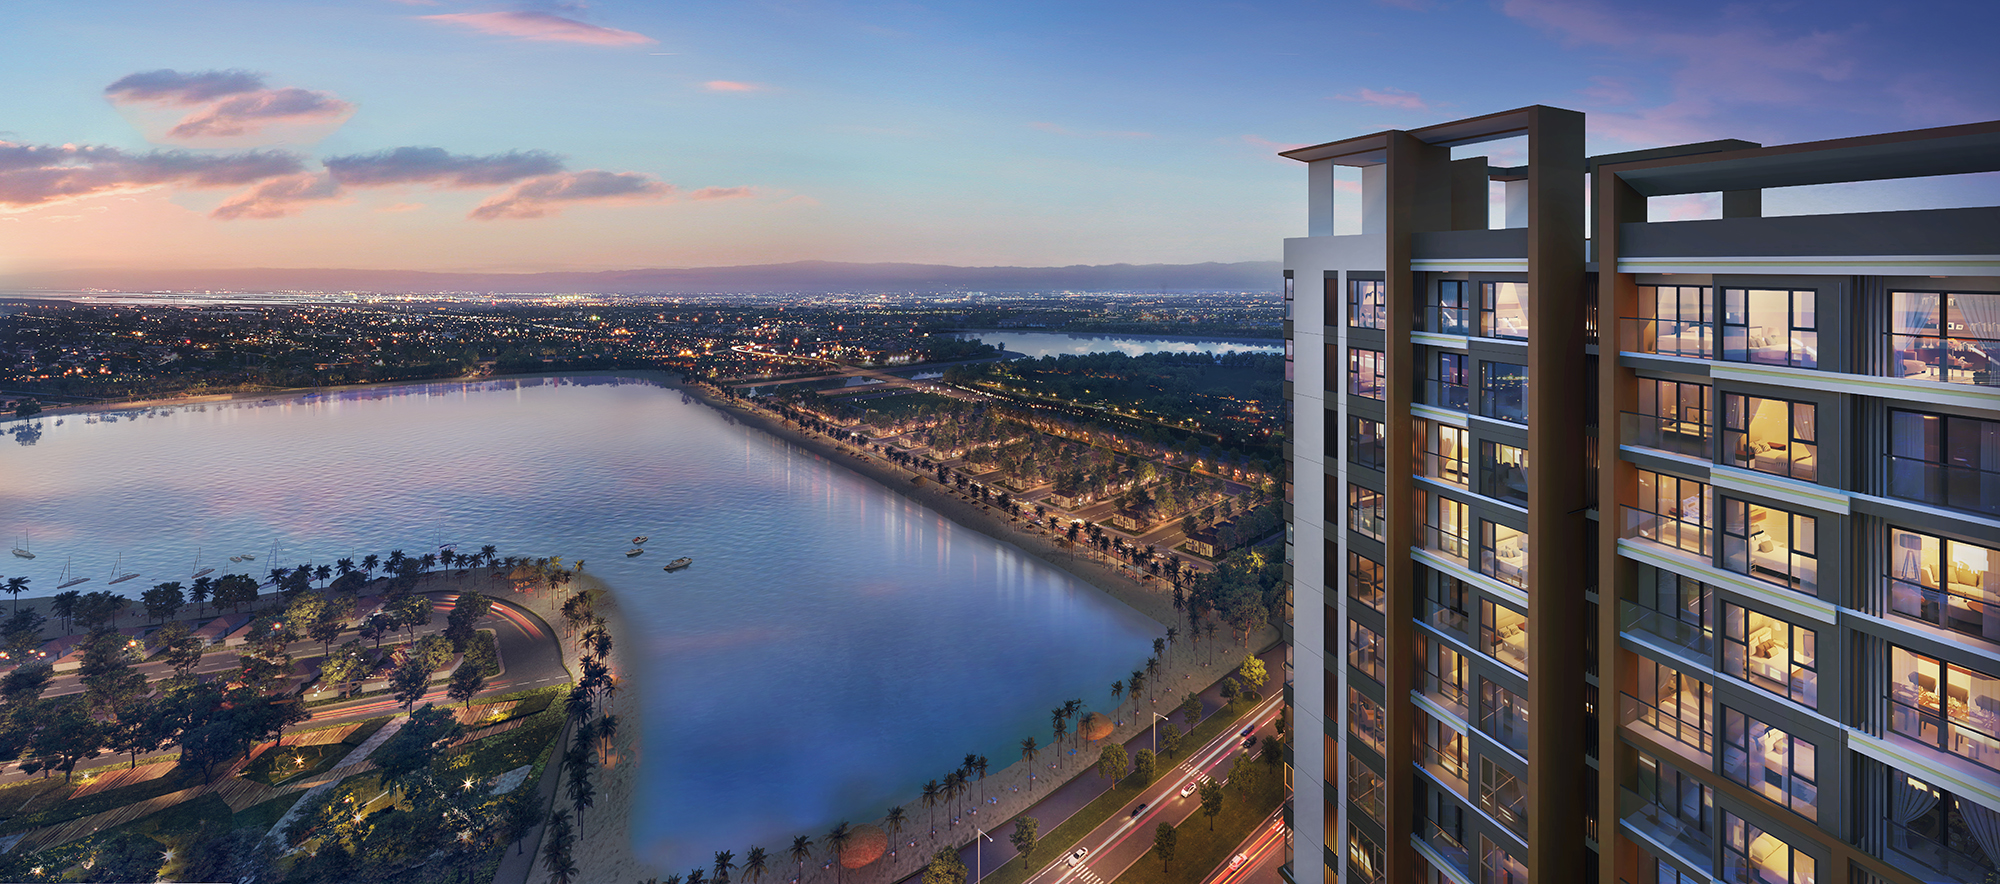 Giá gốc căn hộ cao cấp Masteri Waterfront Ocean Park chưa tới 2 tỷ